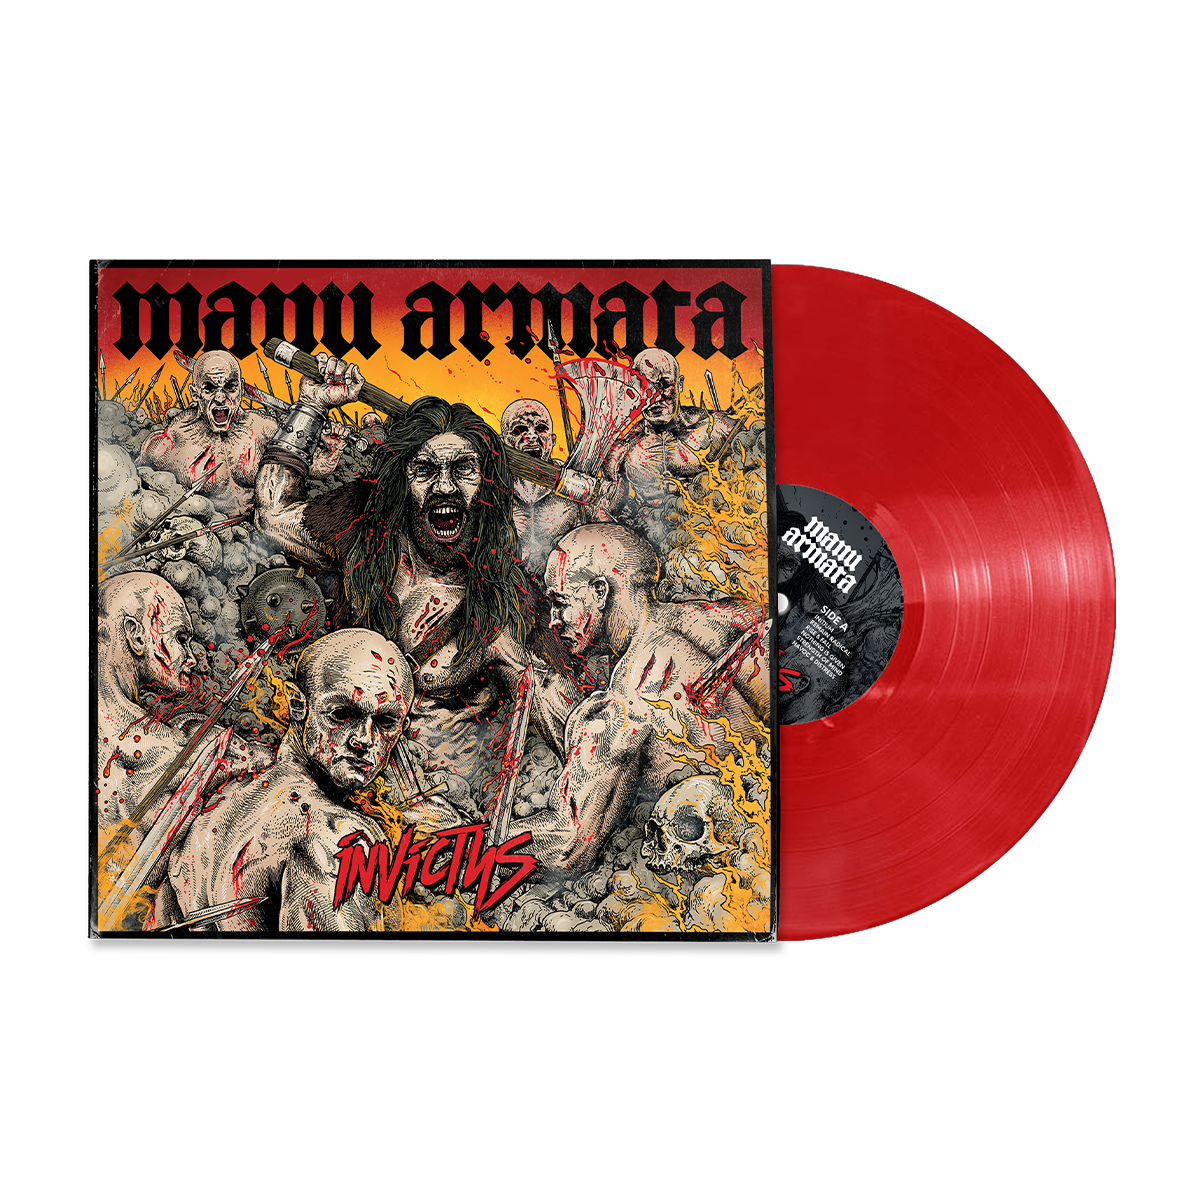 MANU ARMATA "Invictus" red LP